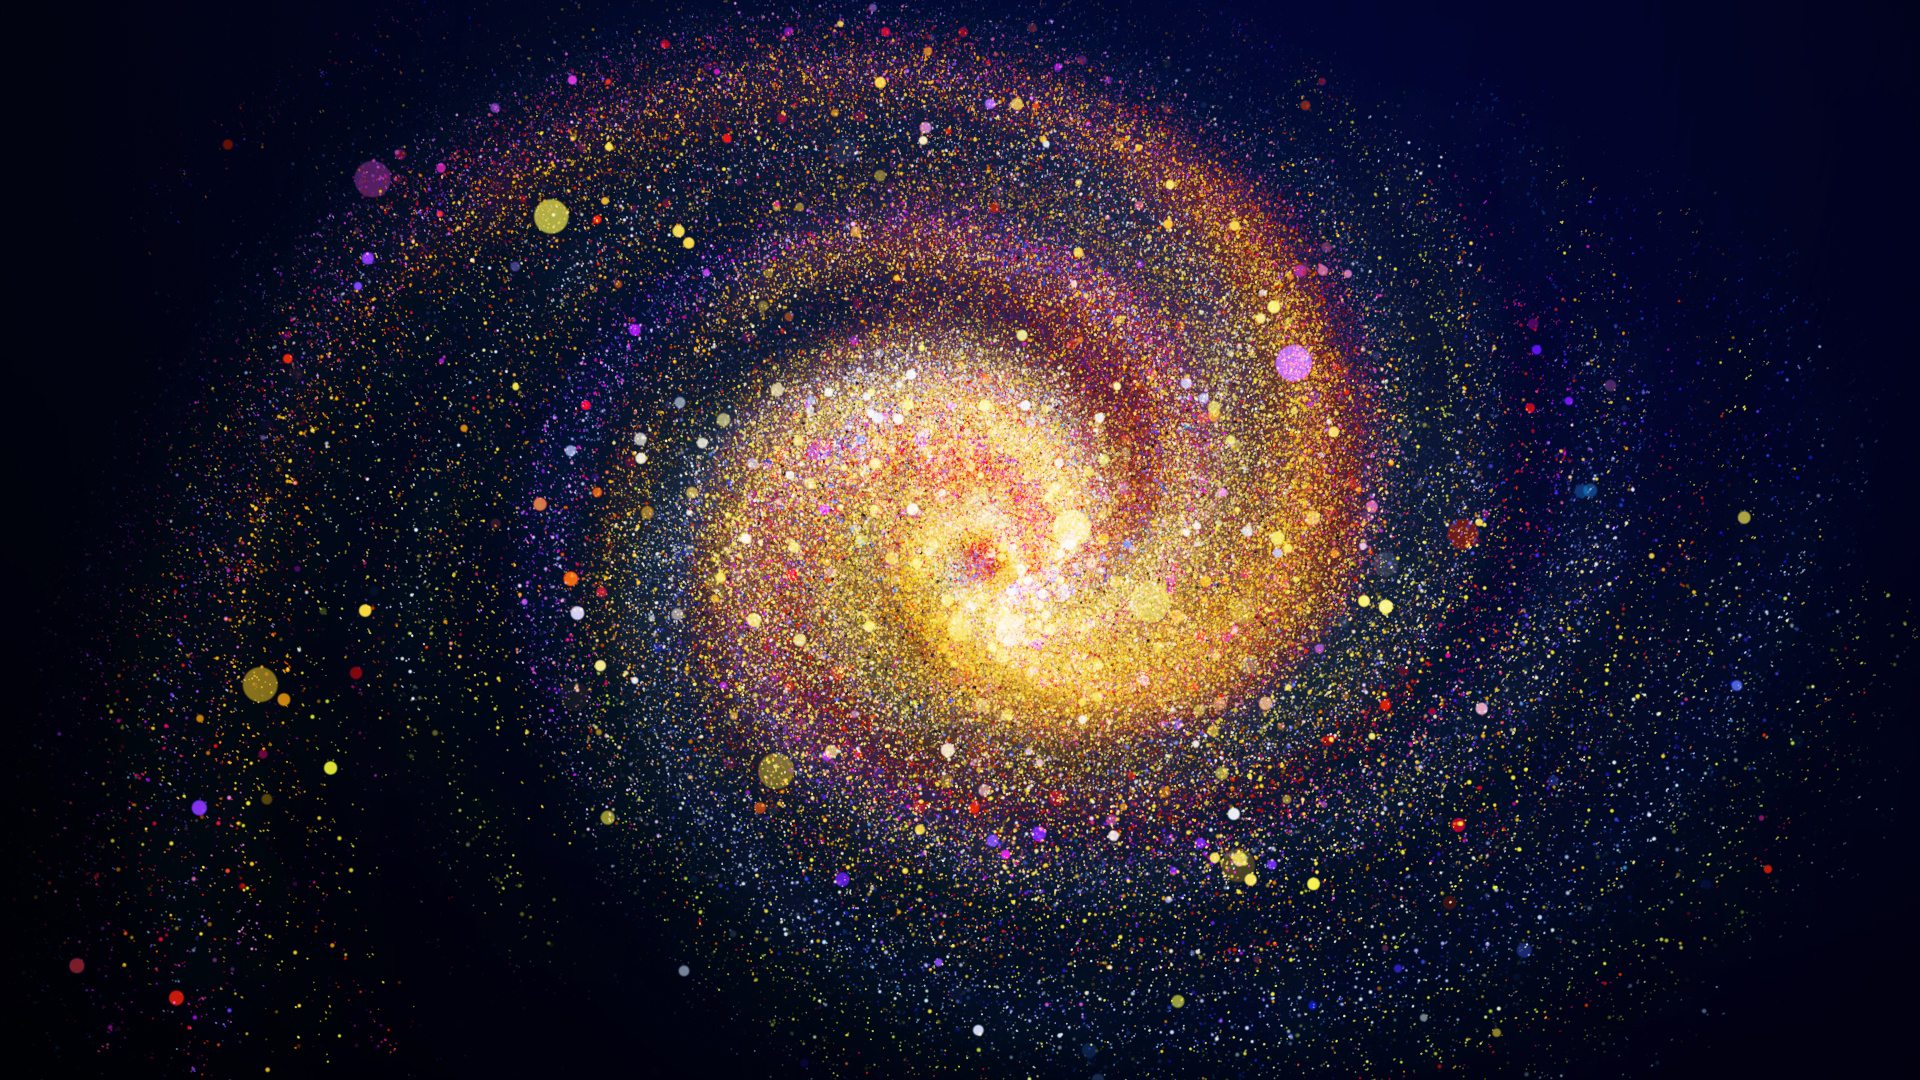 最美的银河夜空风景高清壁纸预览 | 10wallpaper.com